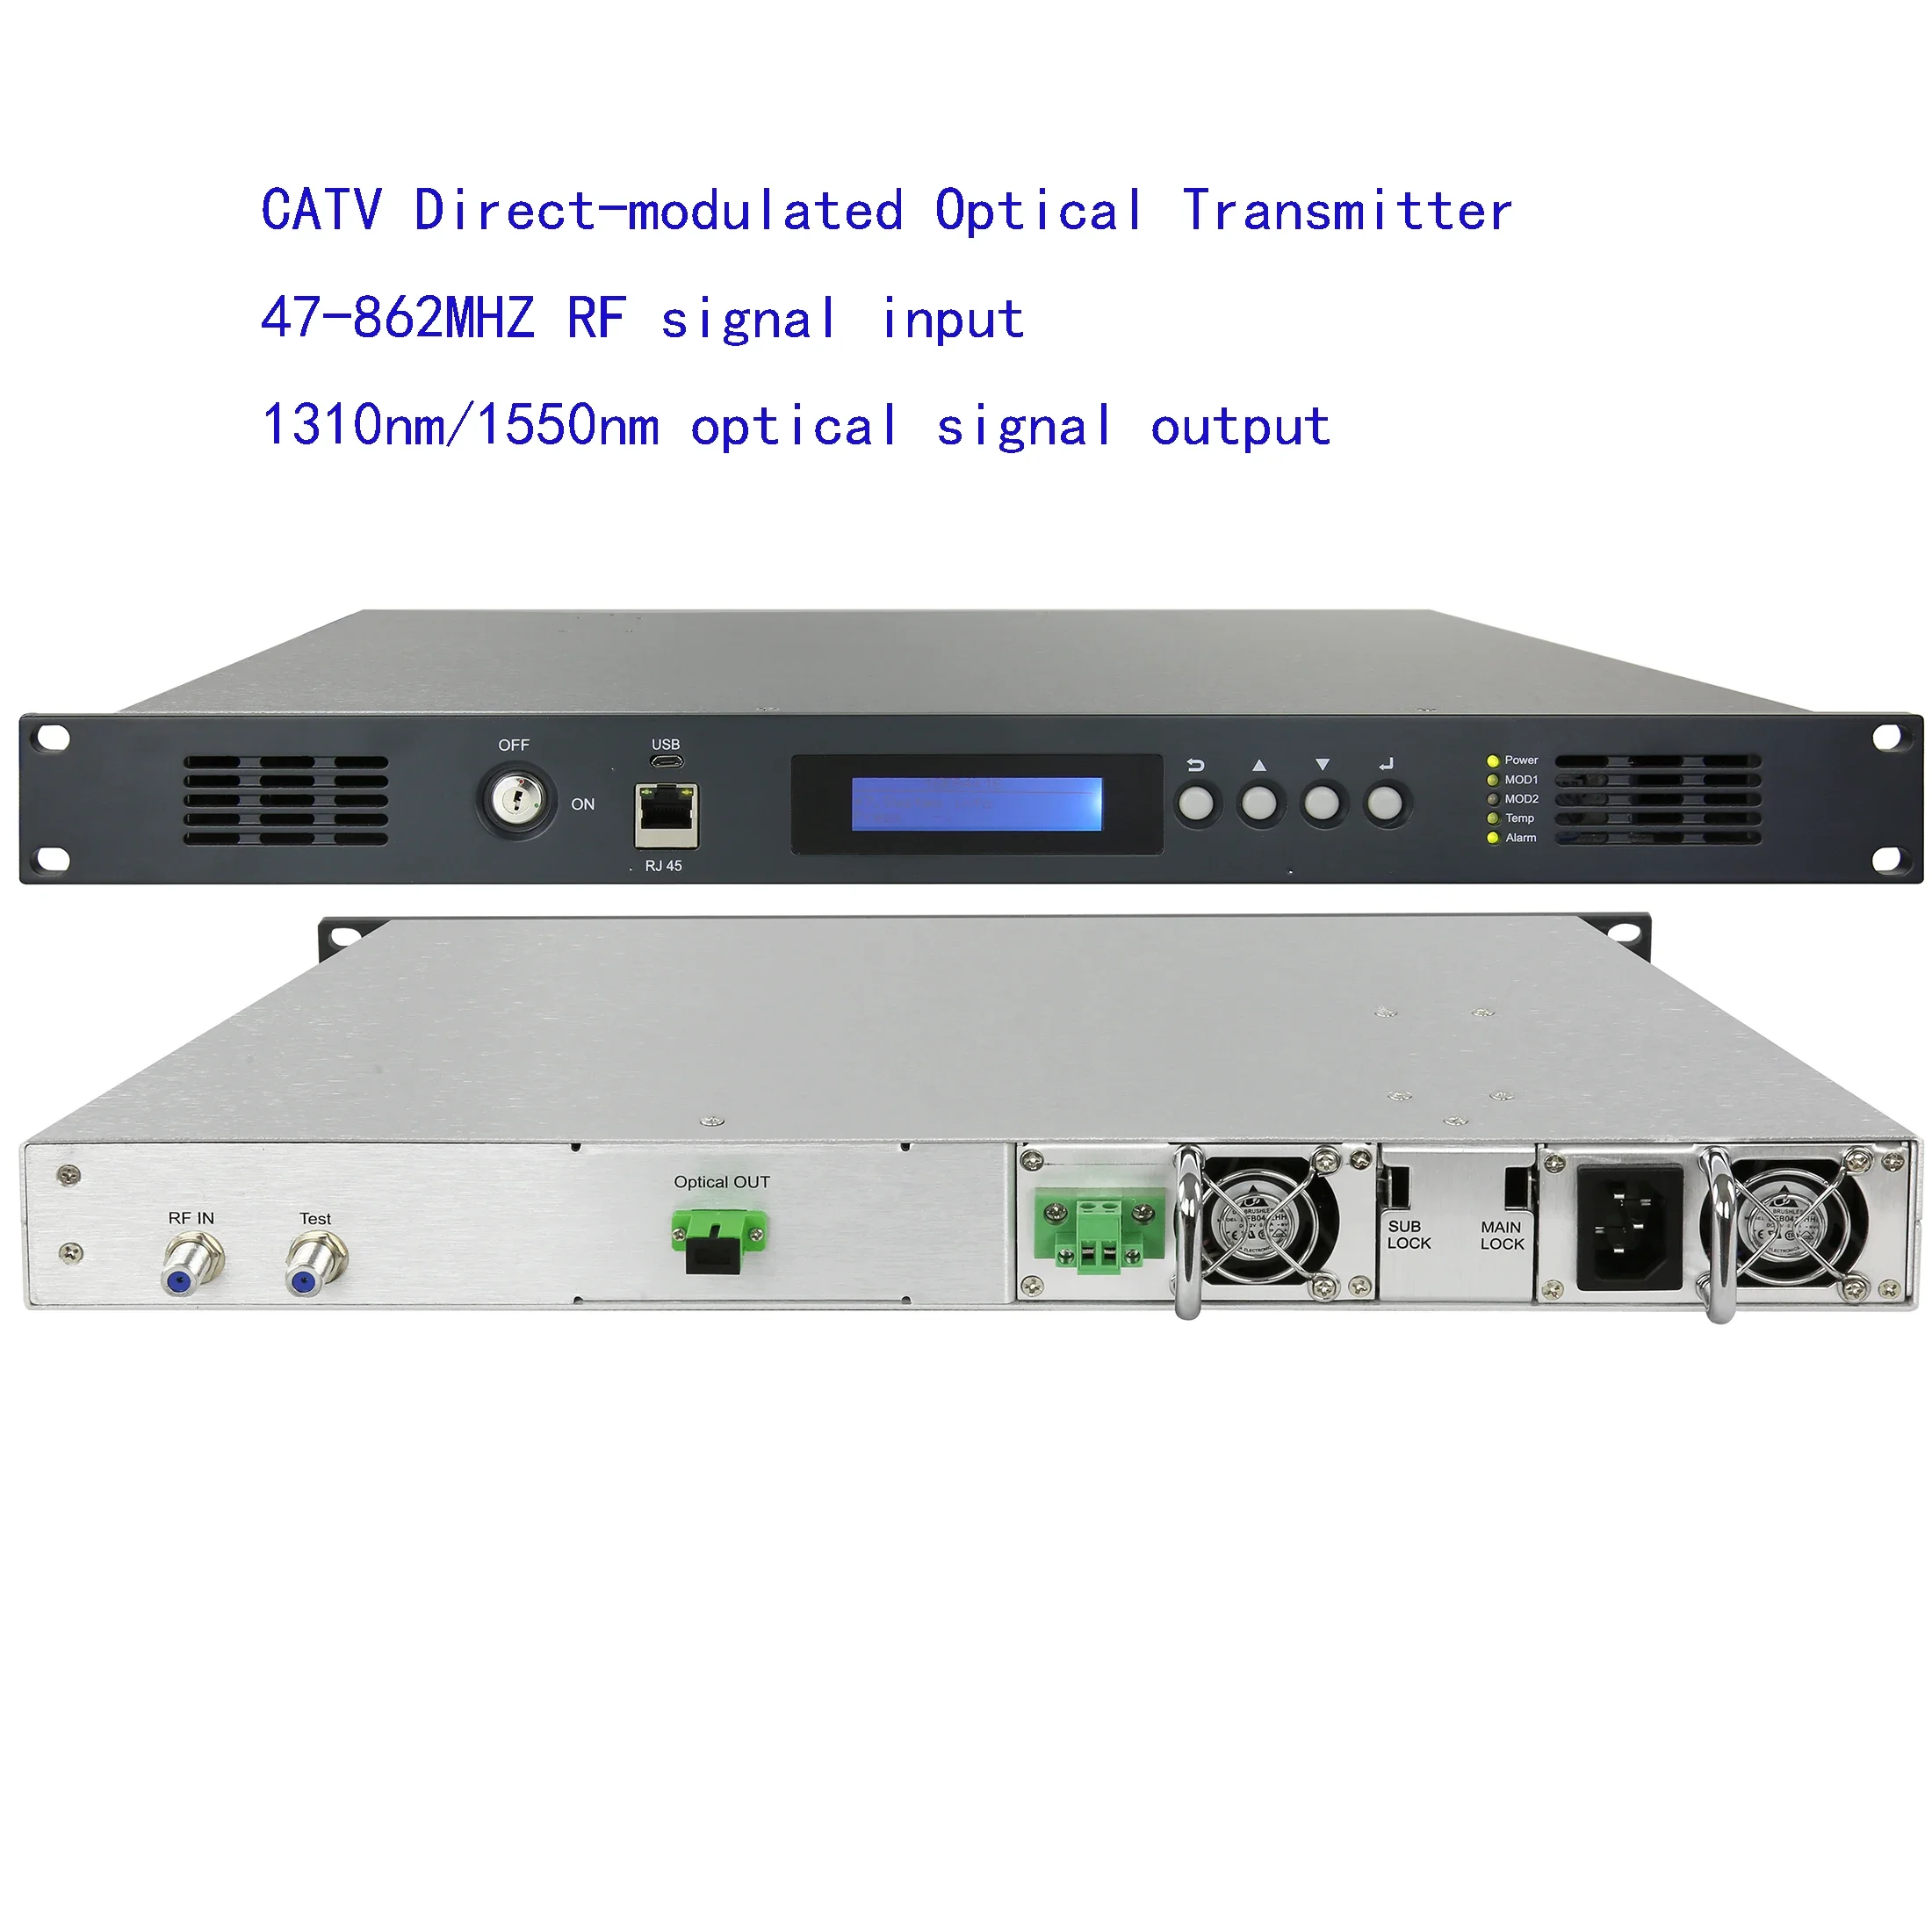 безплатна доставка на Оптичен предавател с КАБЕЛНА телевизия с директна модулация, конвертор RF в оптичен, оптичен предавател 1310 нм/1550 nm